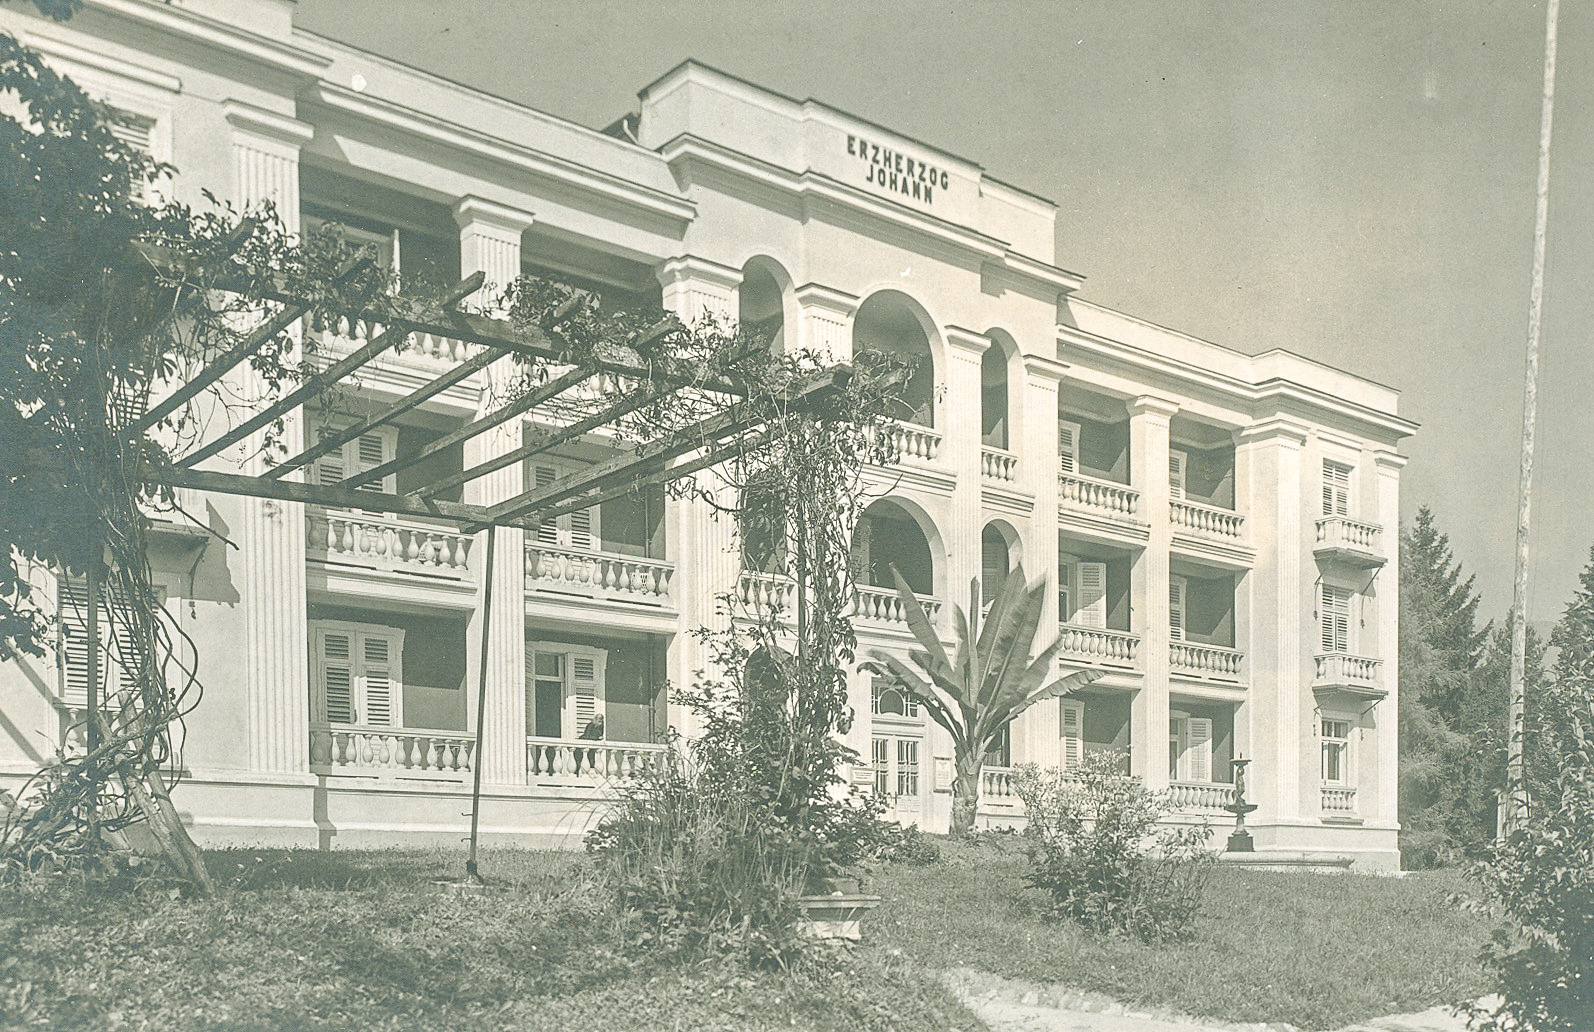 Slika 2: Hotel Erzherzog Johann kmalu po nemški zasedbi leta 1941. Desno od vhodnih vrat se pod povečavo vidi tudi pozdravna tabla z orlom, ki drži oljčni venec s svastiko. Na vzhodni strani stavbe je bil postavljen visok leseni steber, s katerega je plapolala nacistična zastava. Večji del stavbe je do danes ohranil nespremenjeno podobo, zgolj zahodno krilo se je razširilo in modificiralo z izgradnjo novega veznega objekta.